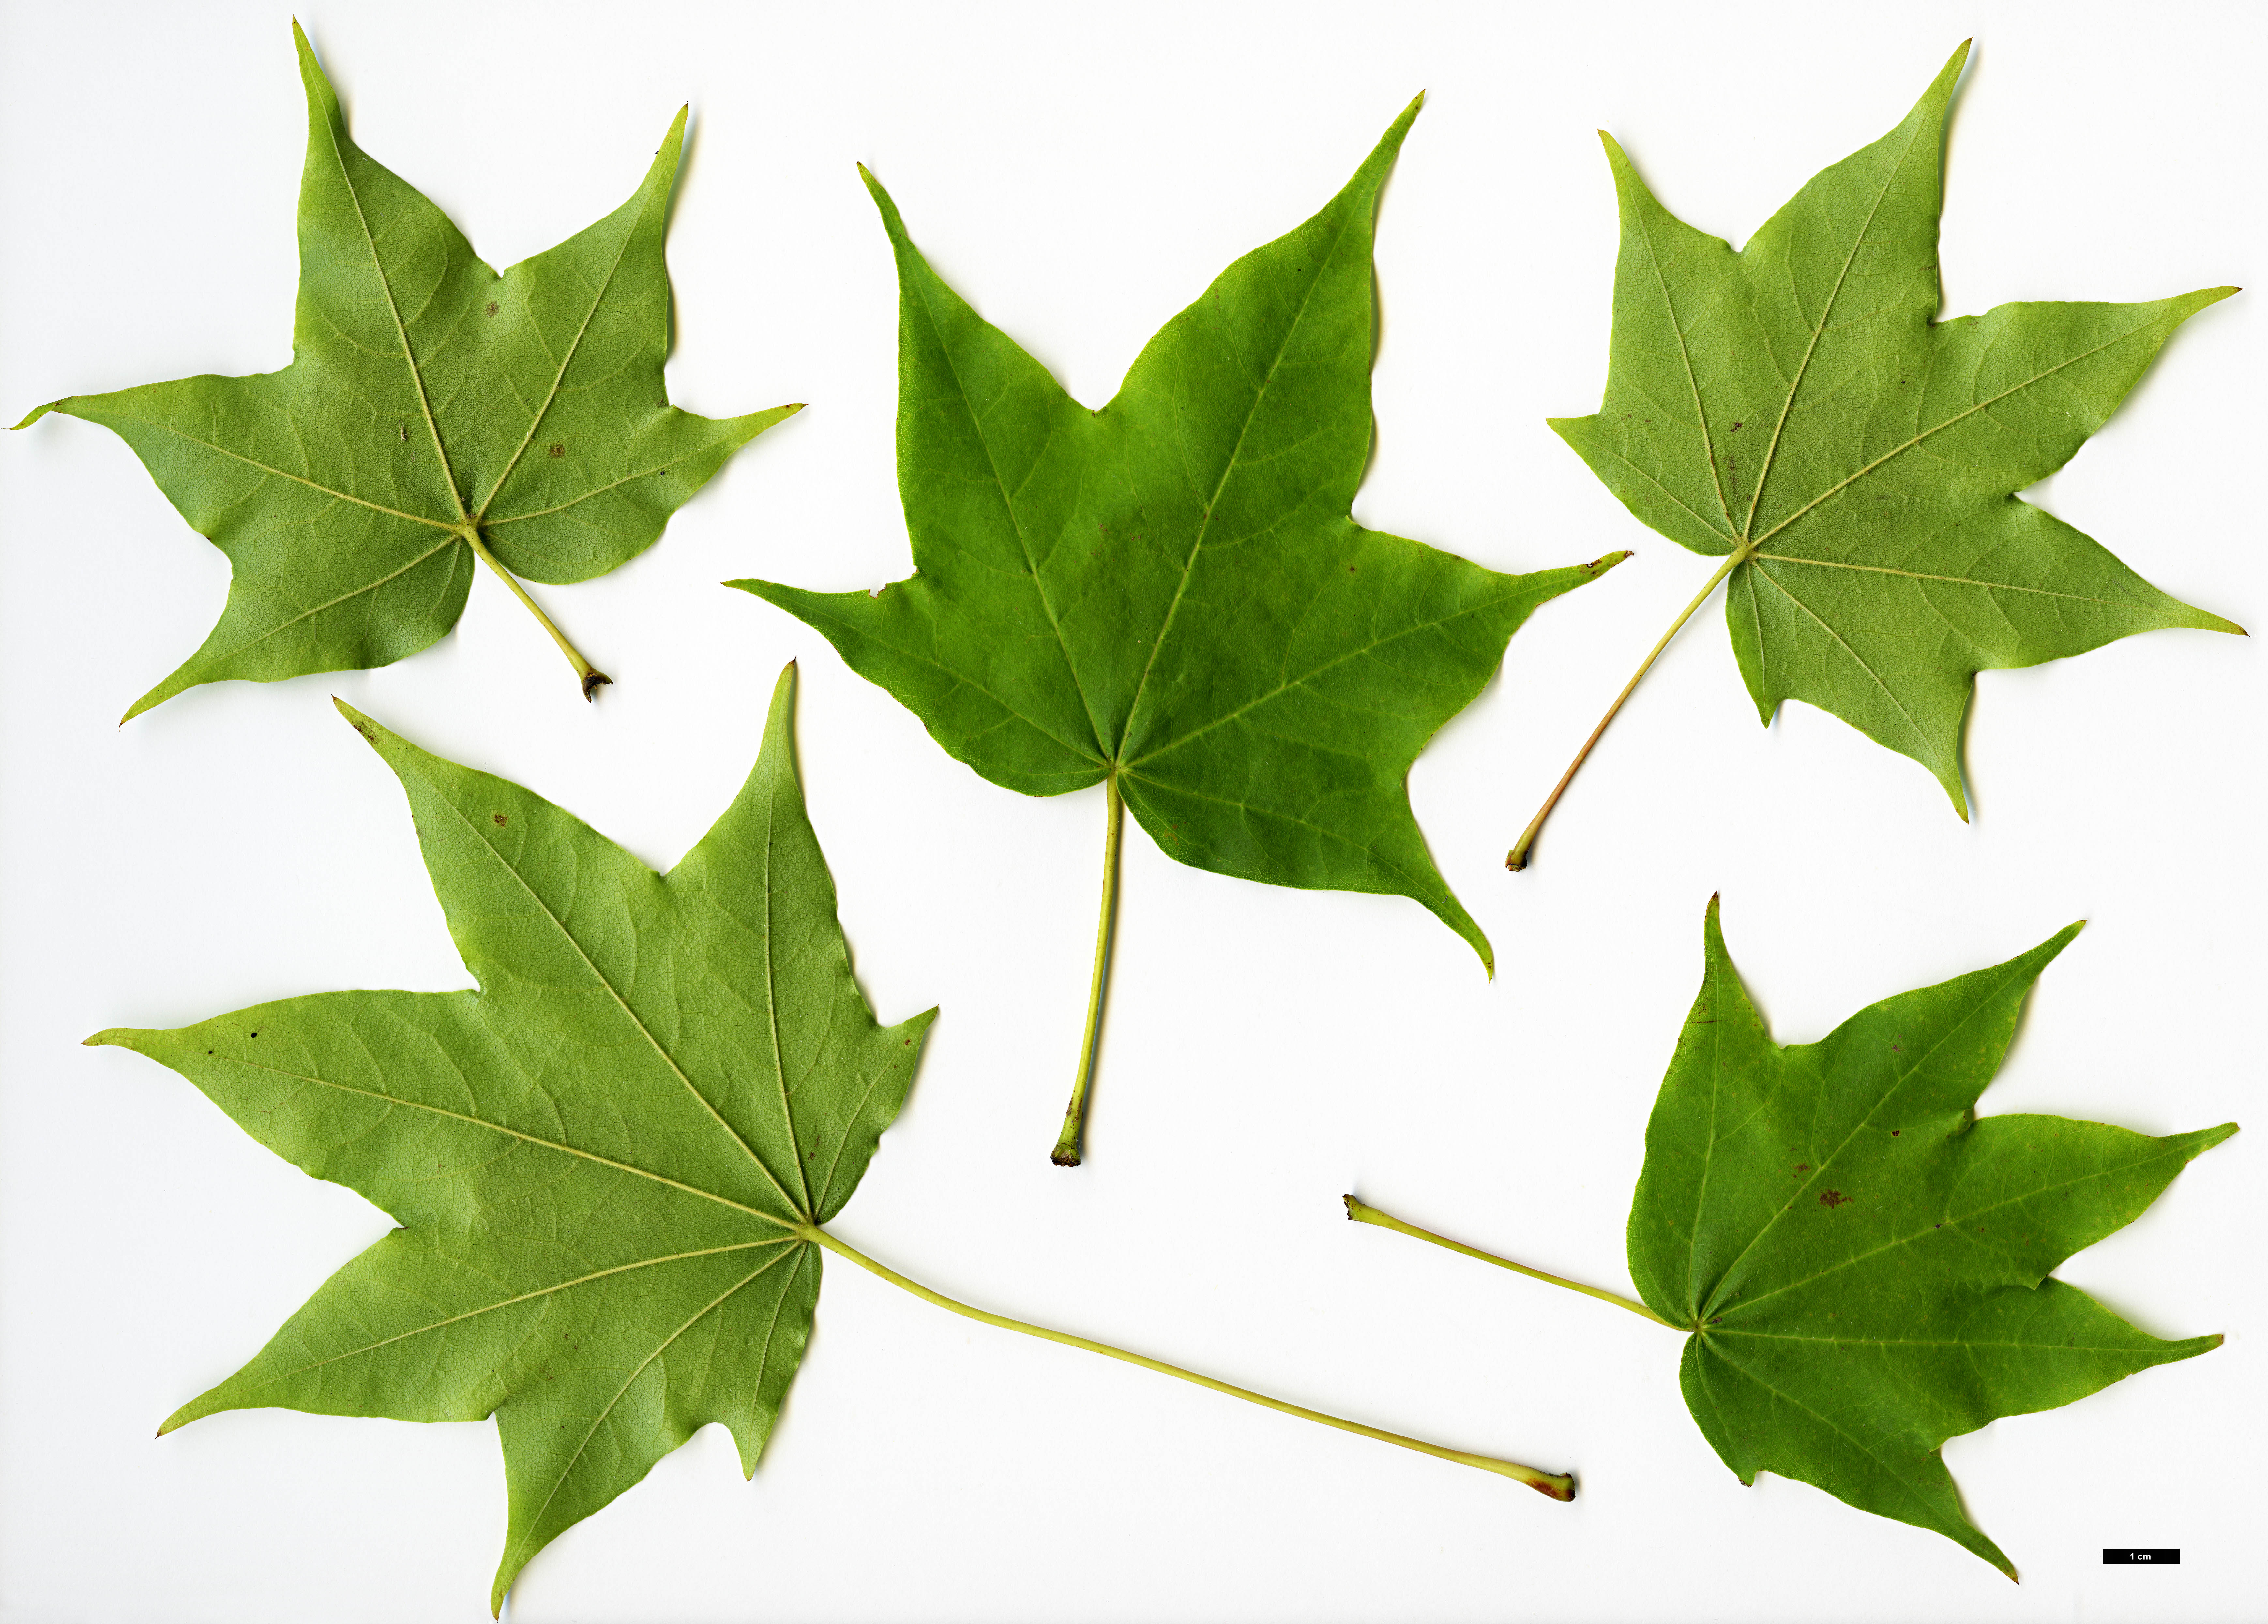 High resolution image: Family: Sapindaceae - Genus: Acer - Taxon: pictum - SpeciesSub: subsp. savatieri